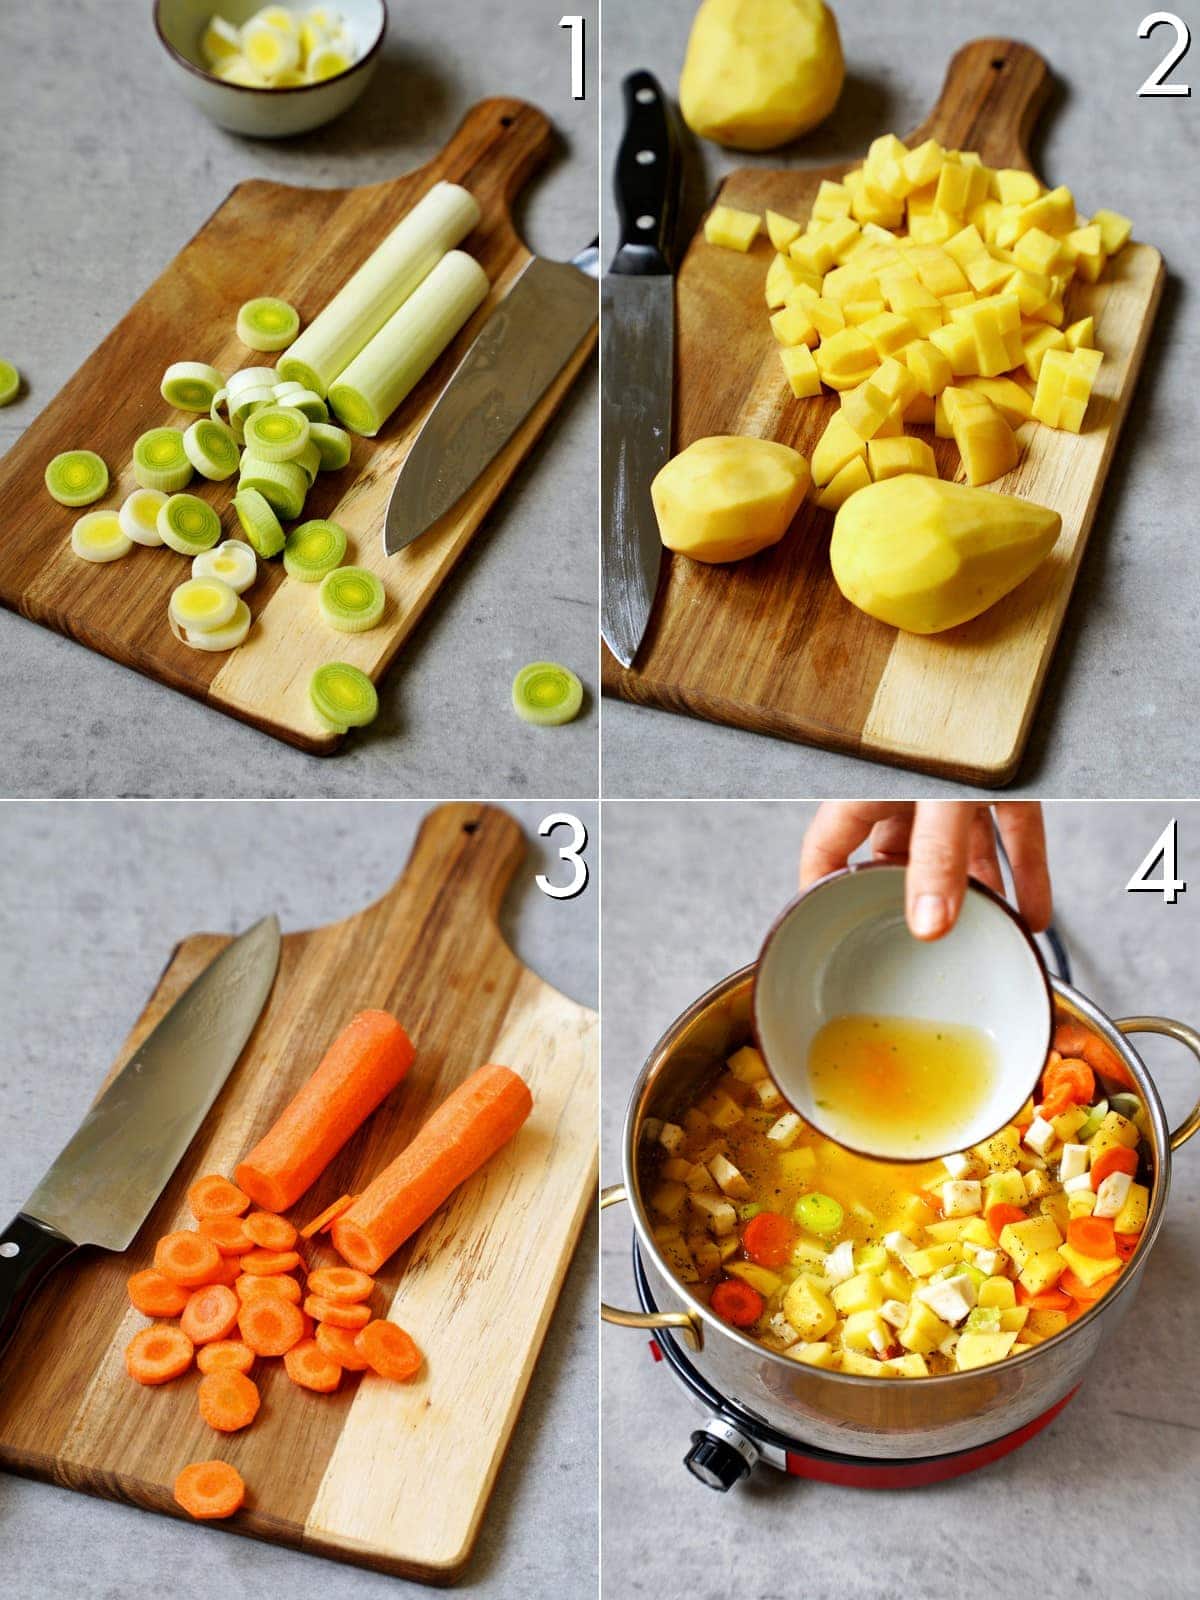 4 Bilder, die Schritt für Schritt zeigen, wie man Gemüse schneidet